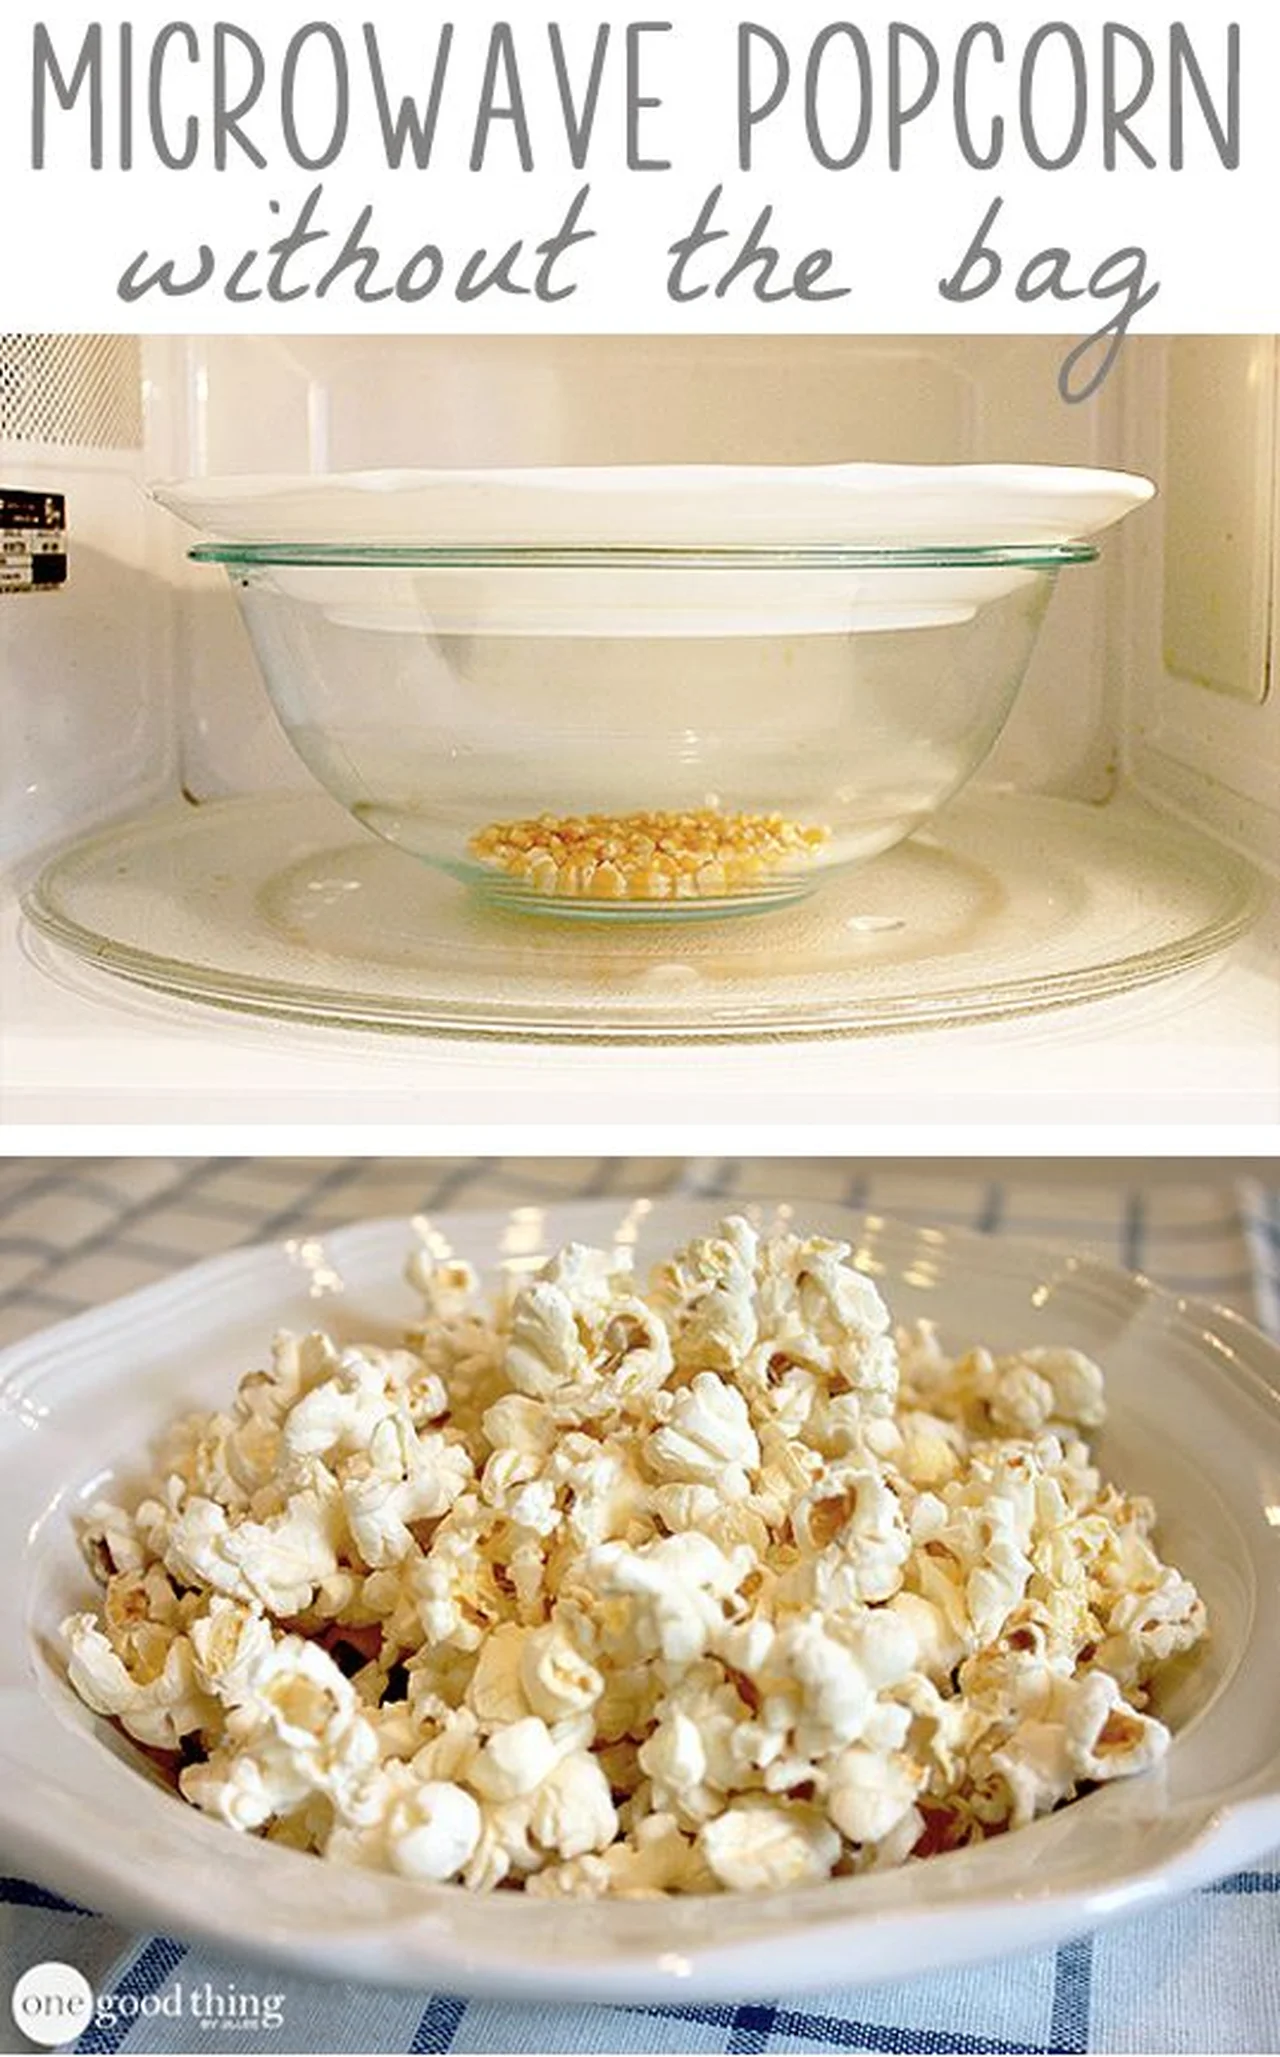 Popcorn bez torebki z mikrofalówki